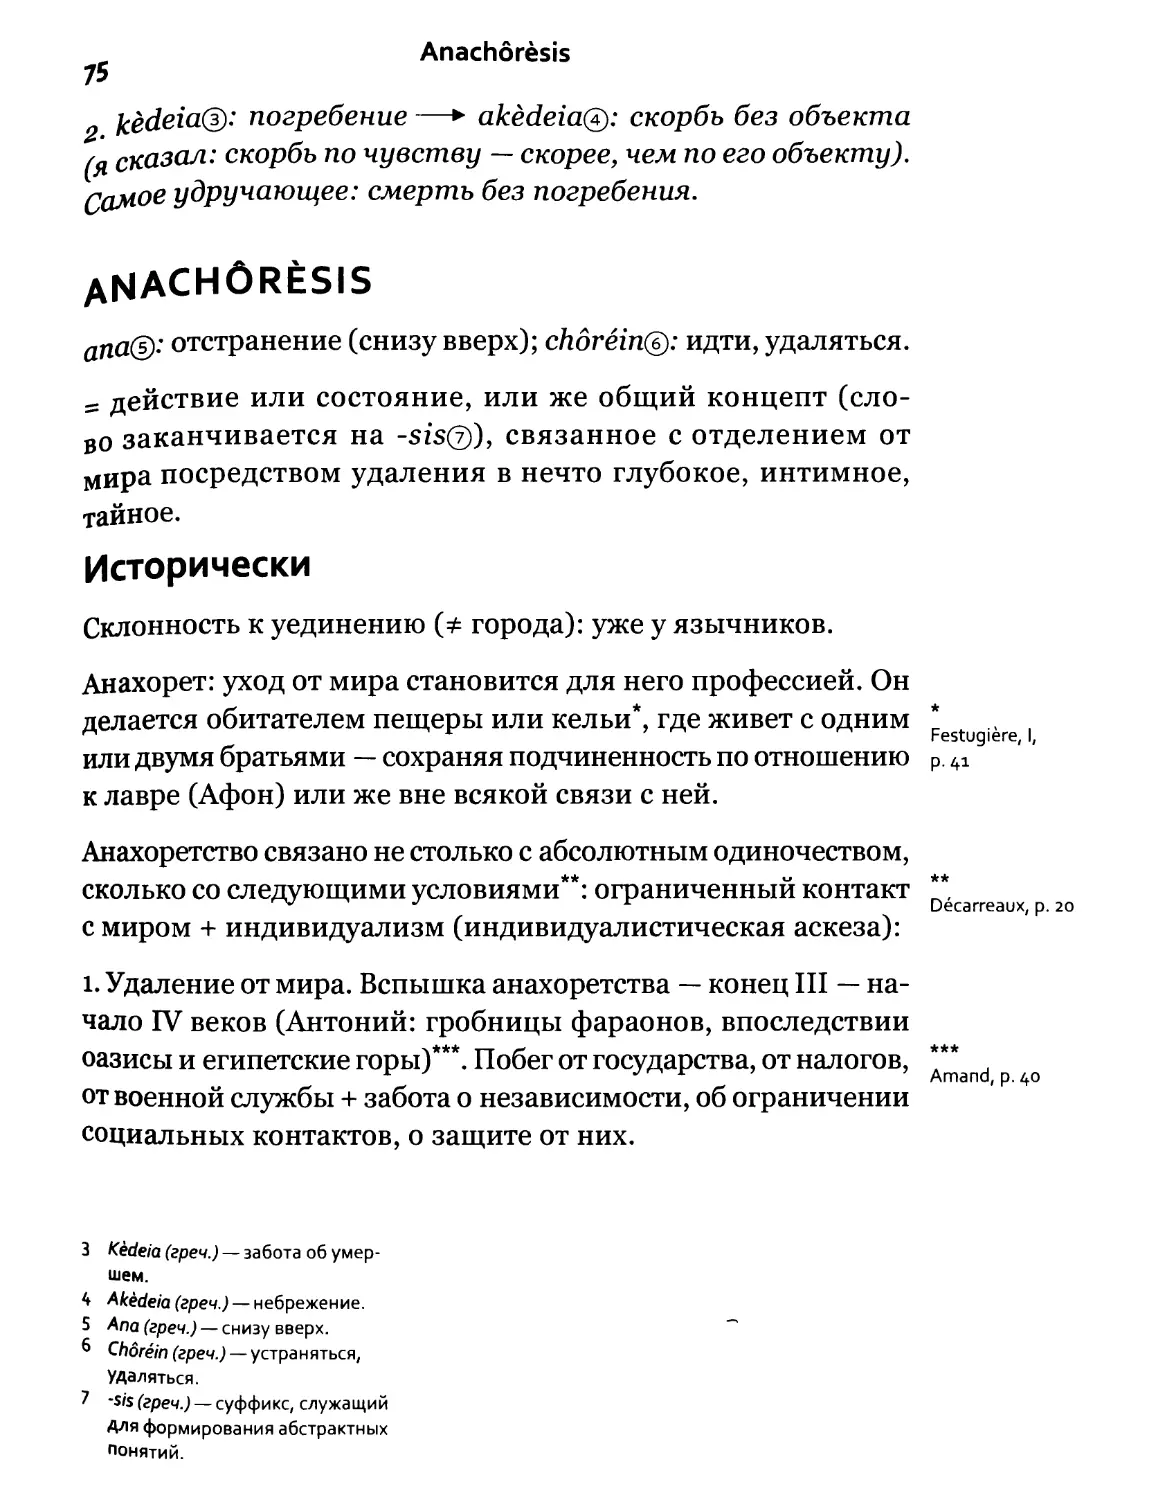 Anachoresis